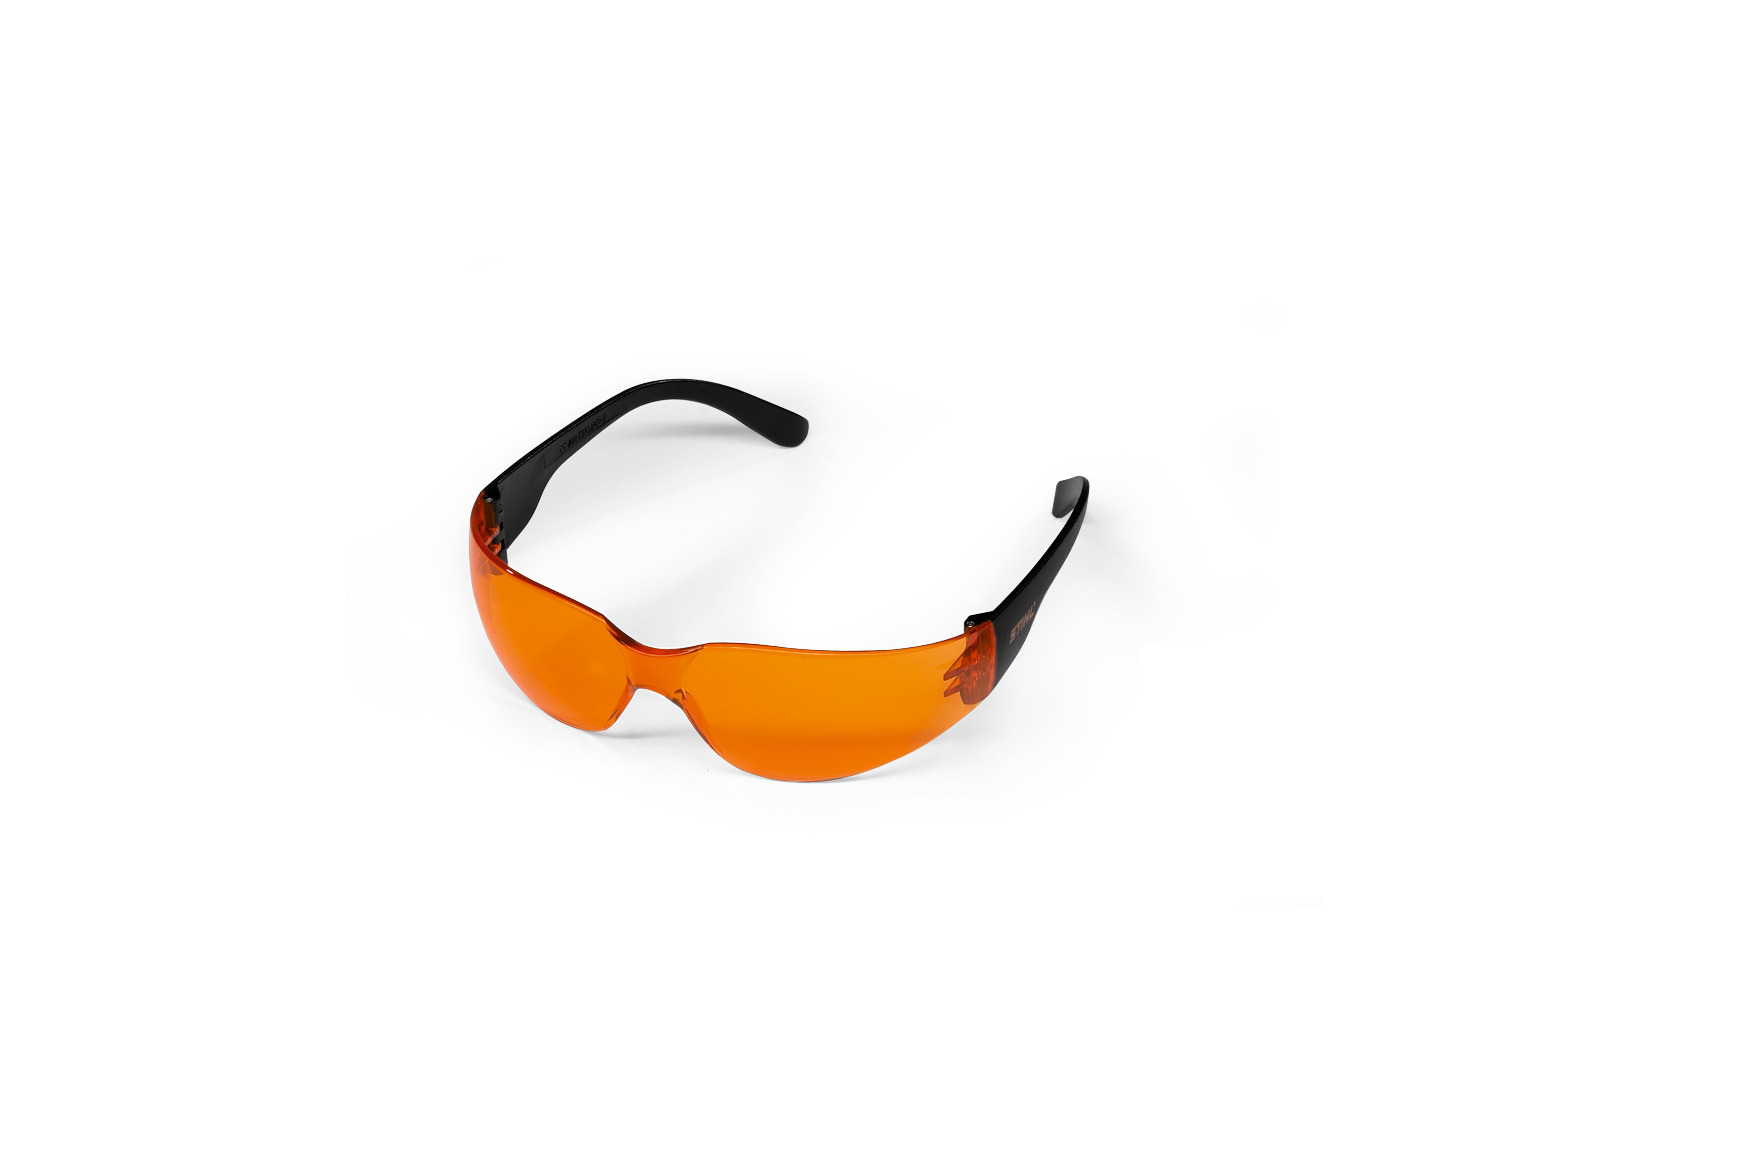 Schutzbrille Light - orange